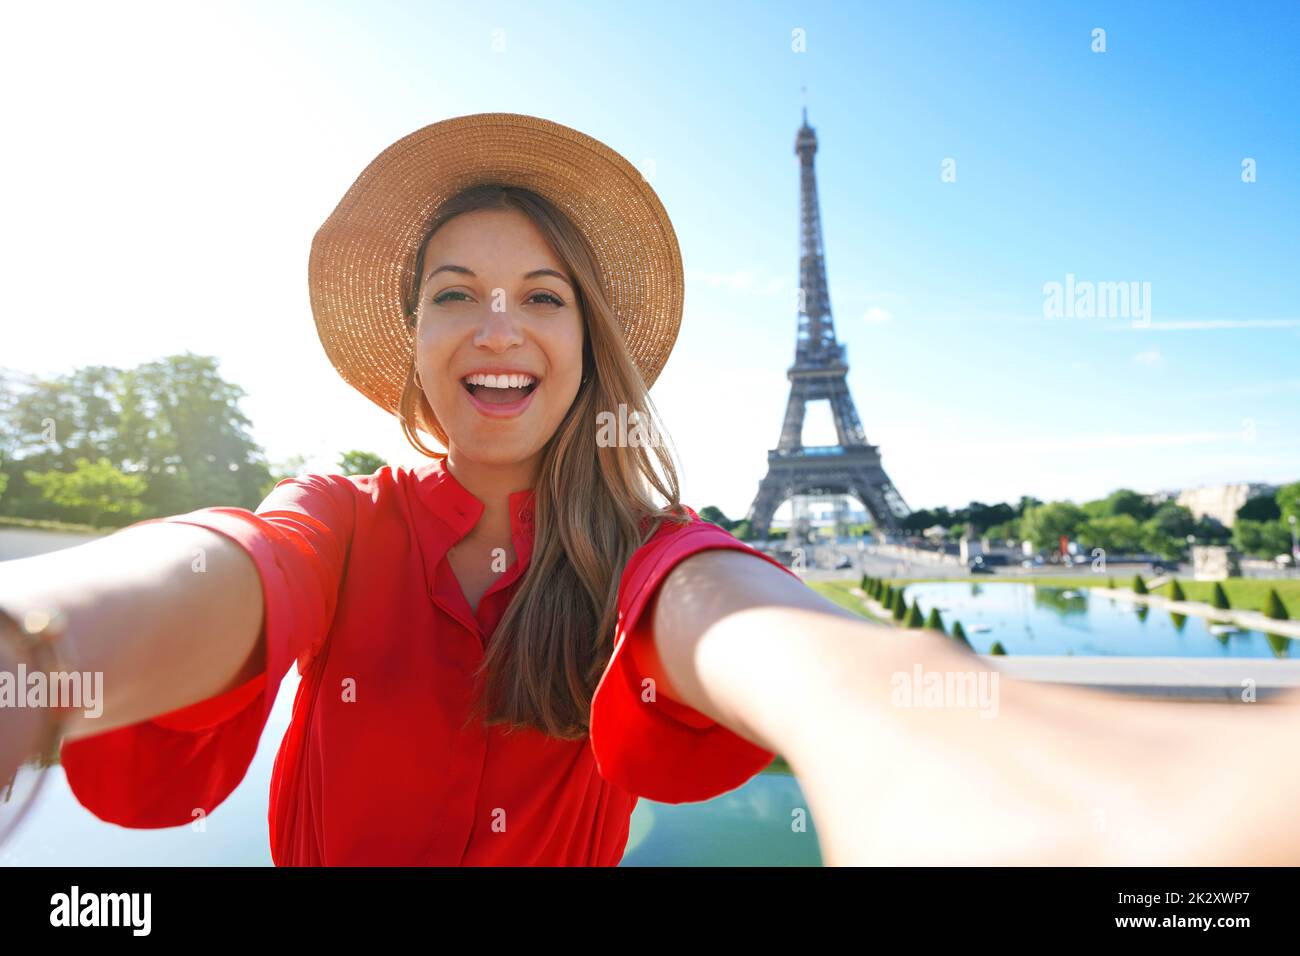 Mujer de moda emocionada con vestido rojo y sombrero se divierte haciendo autorretrato con la Torre Eiffel de fondo en París, Francia. Foto de stock